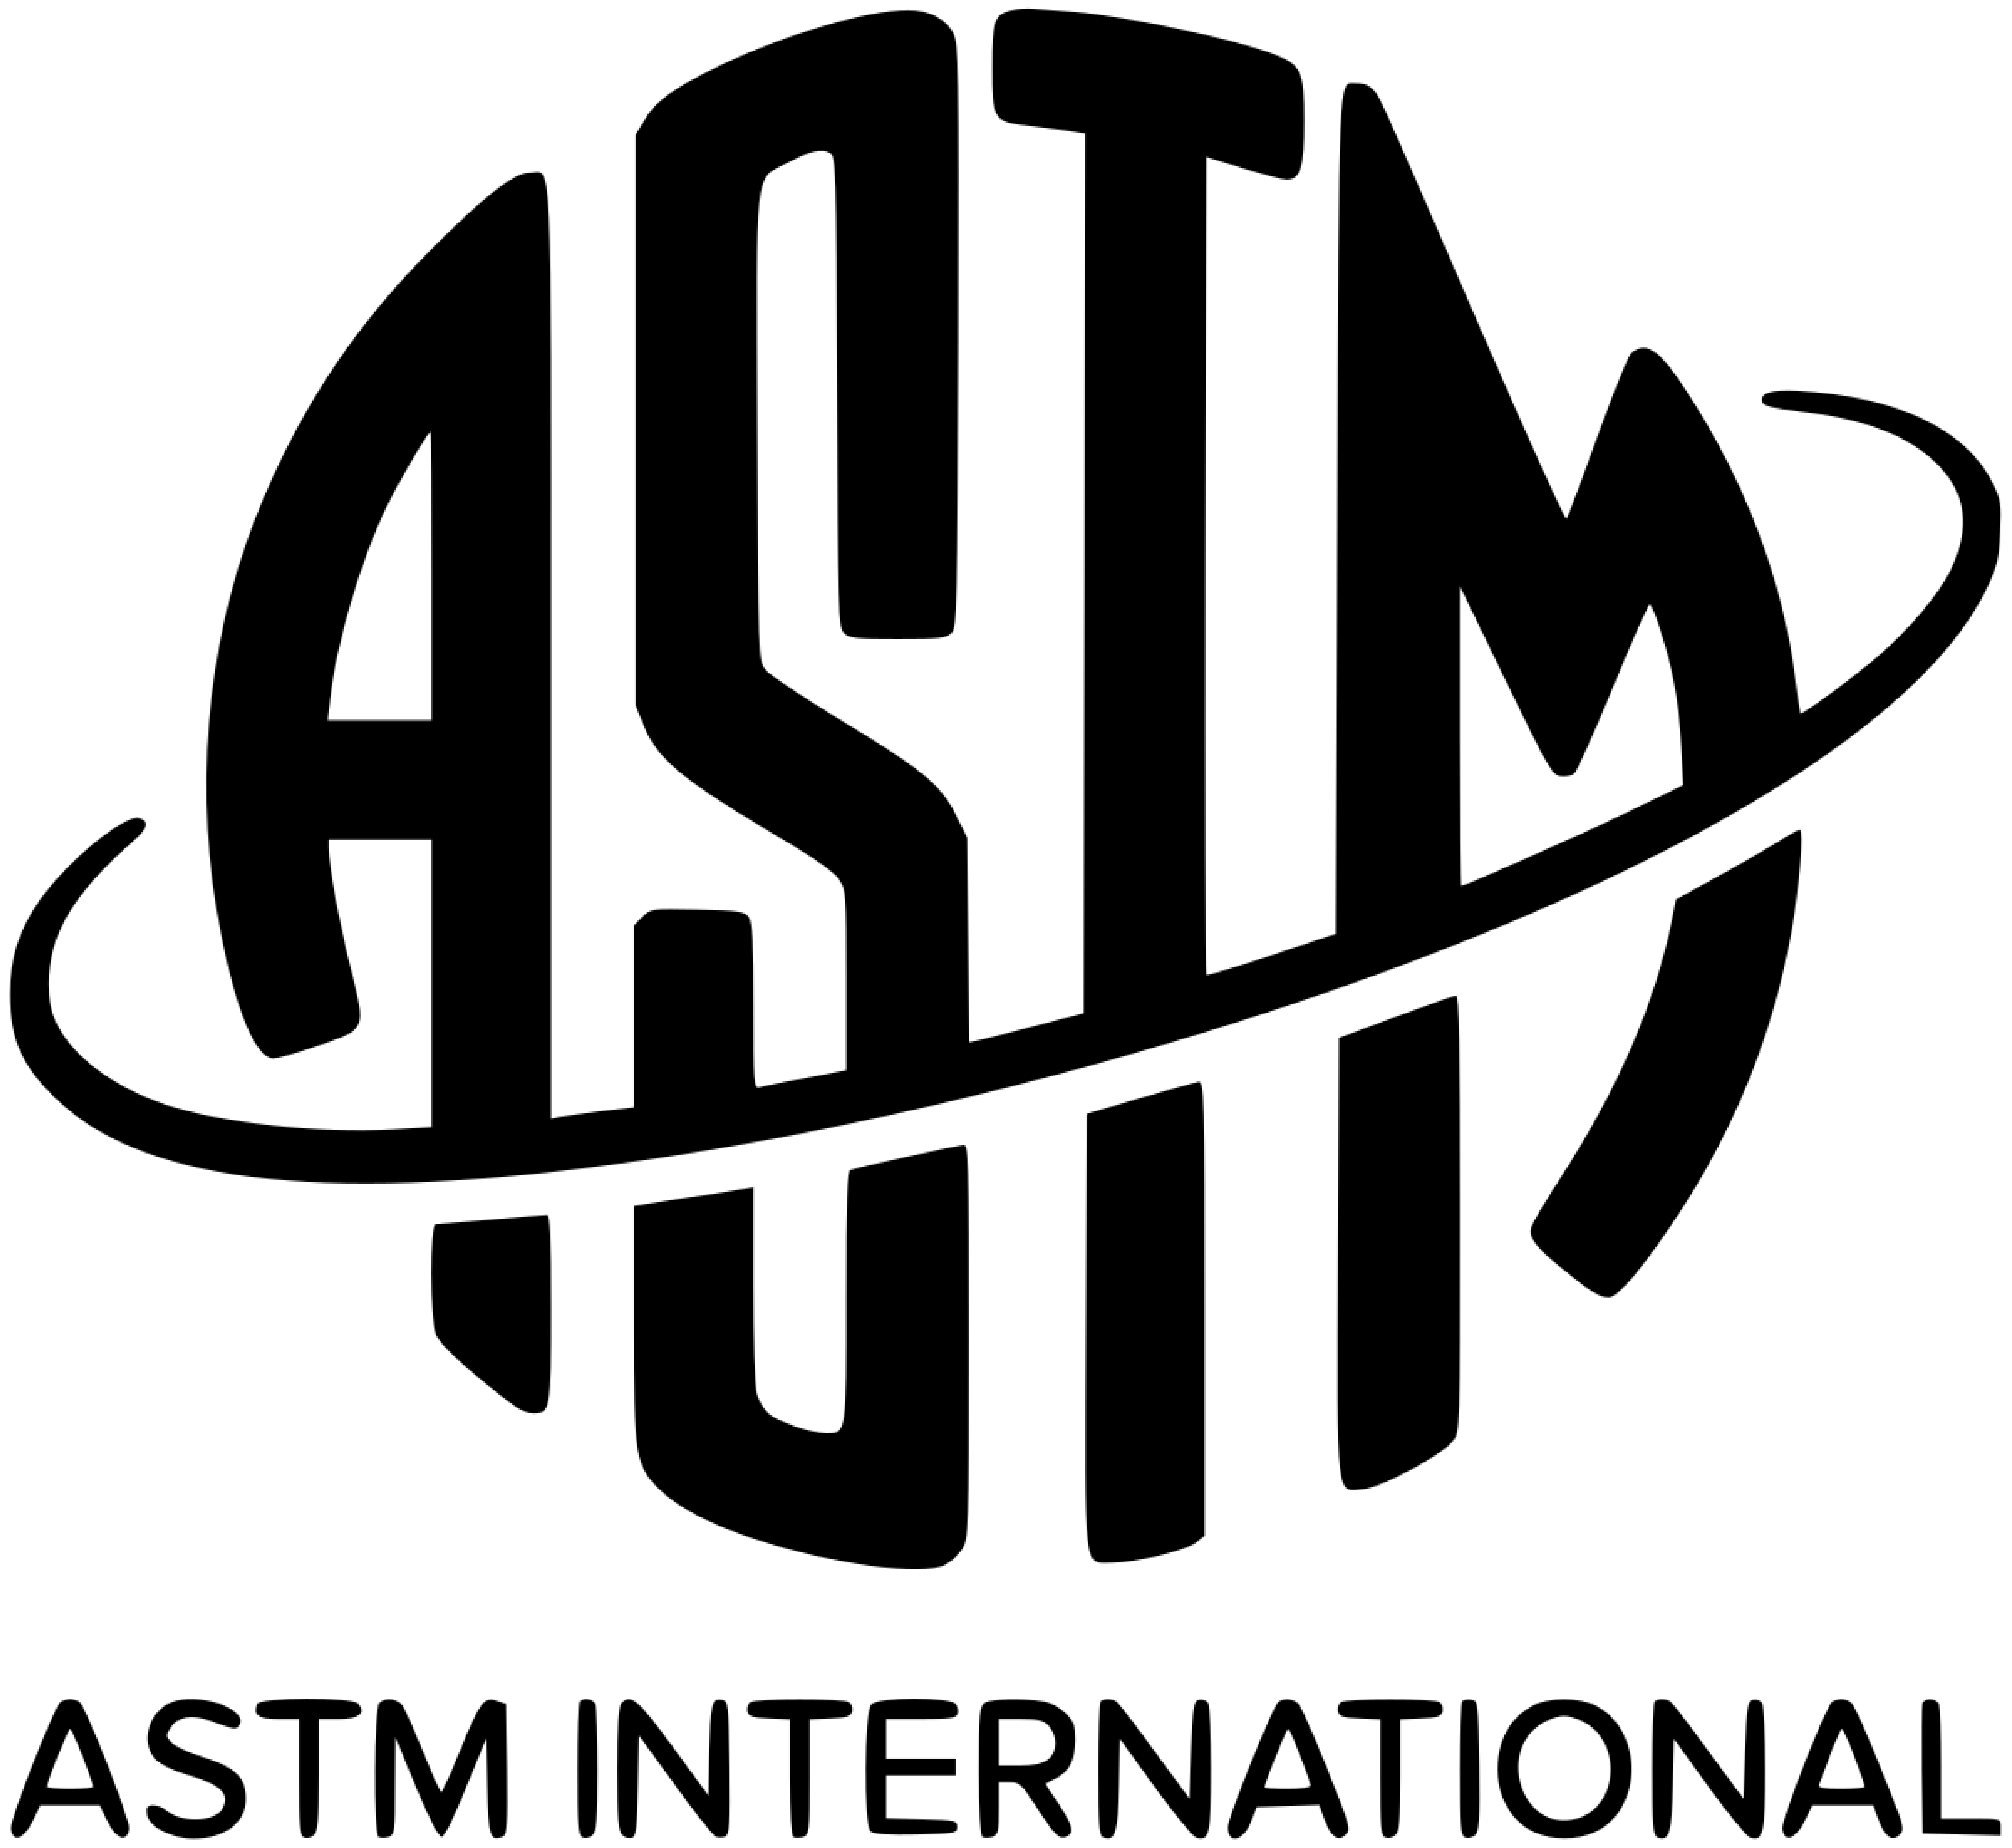 ASTM logo-1